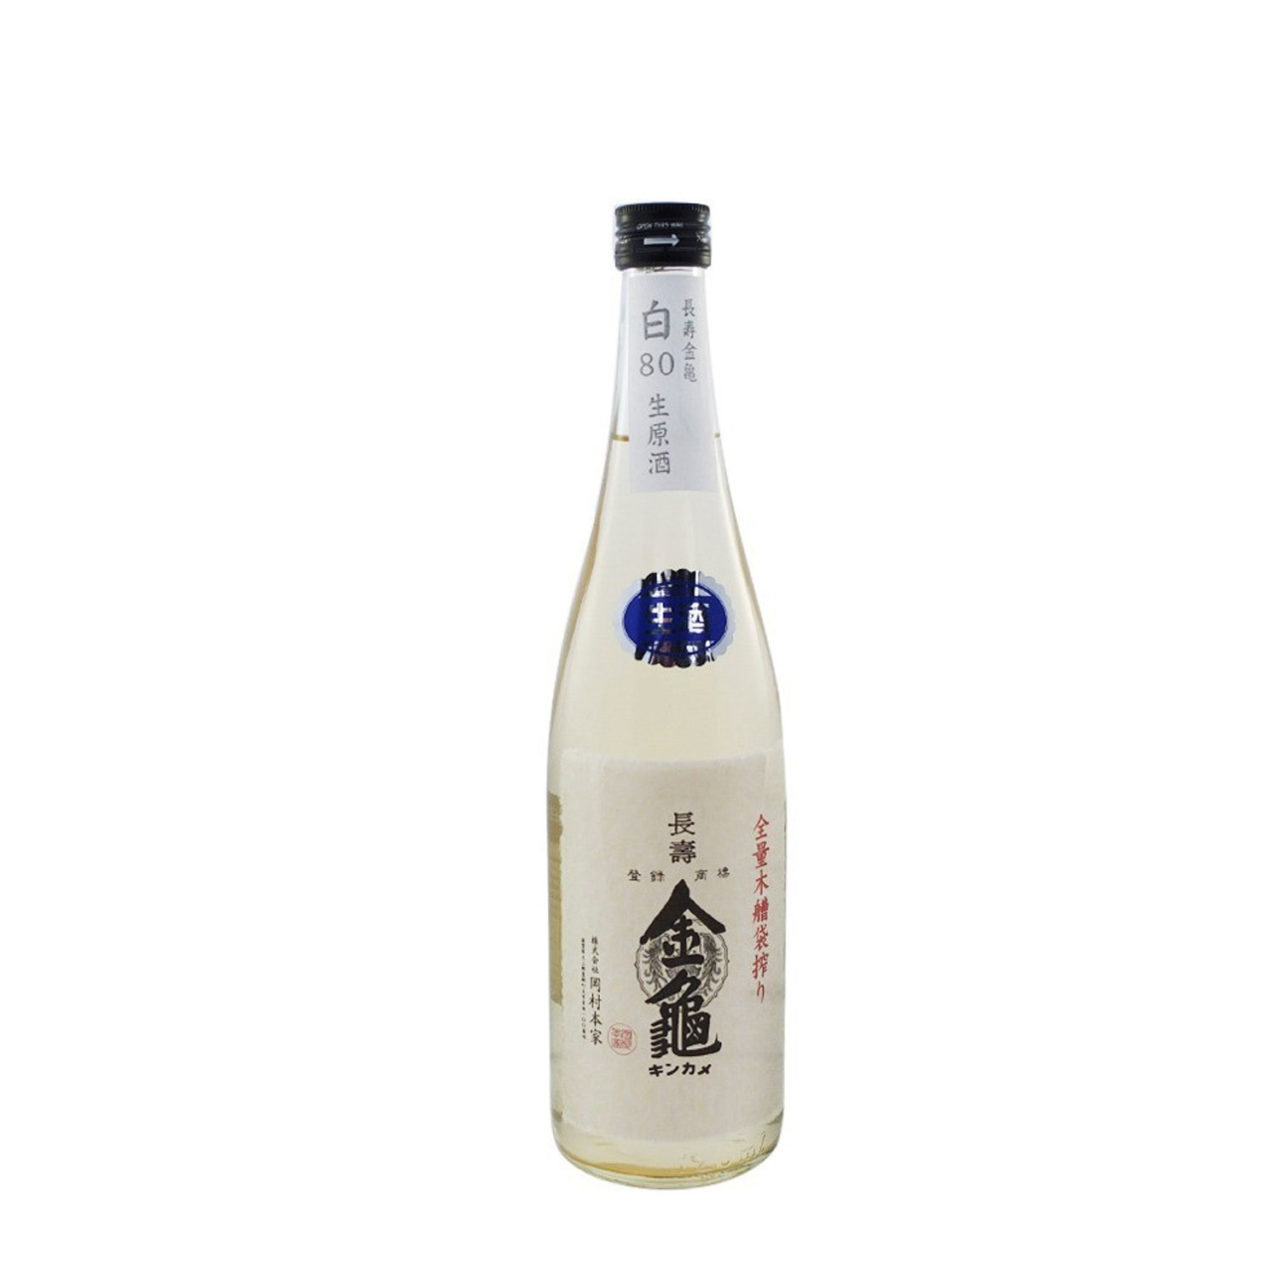 sake-KINKAME-80-17-ginjo-paris-sake